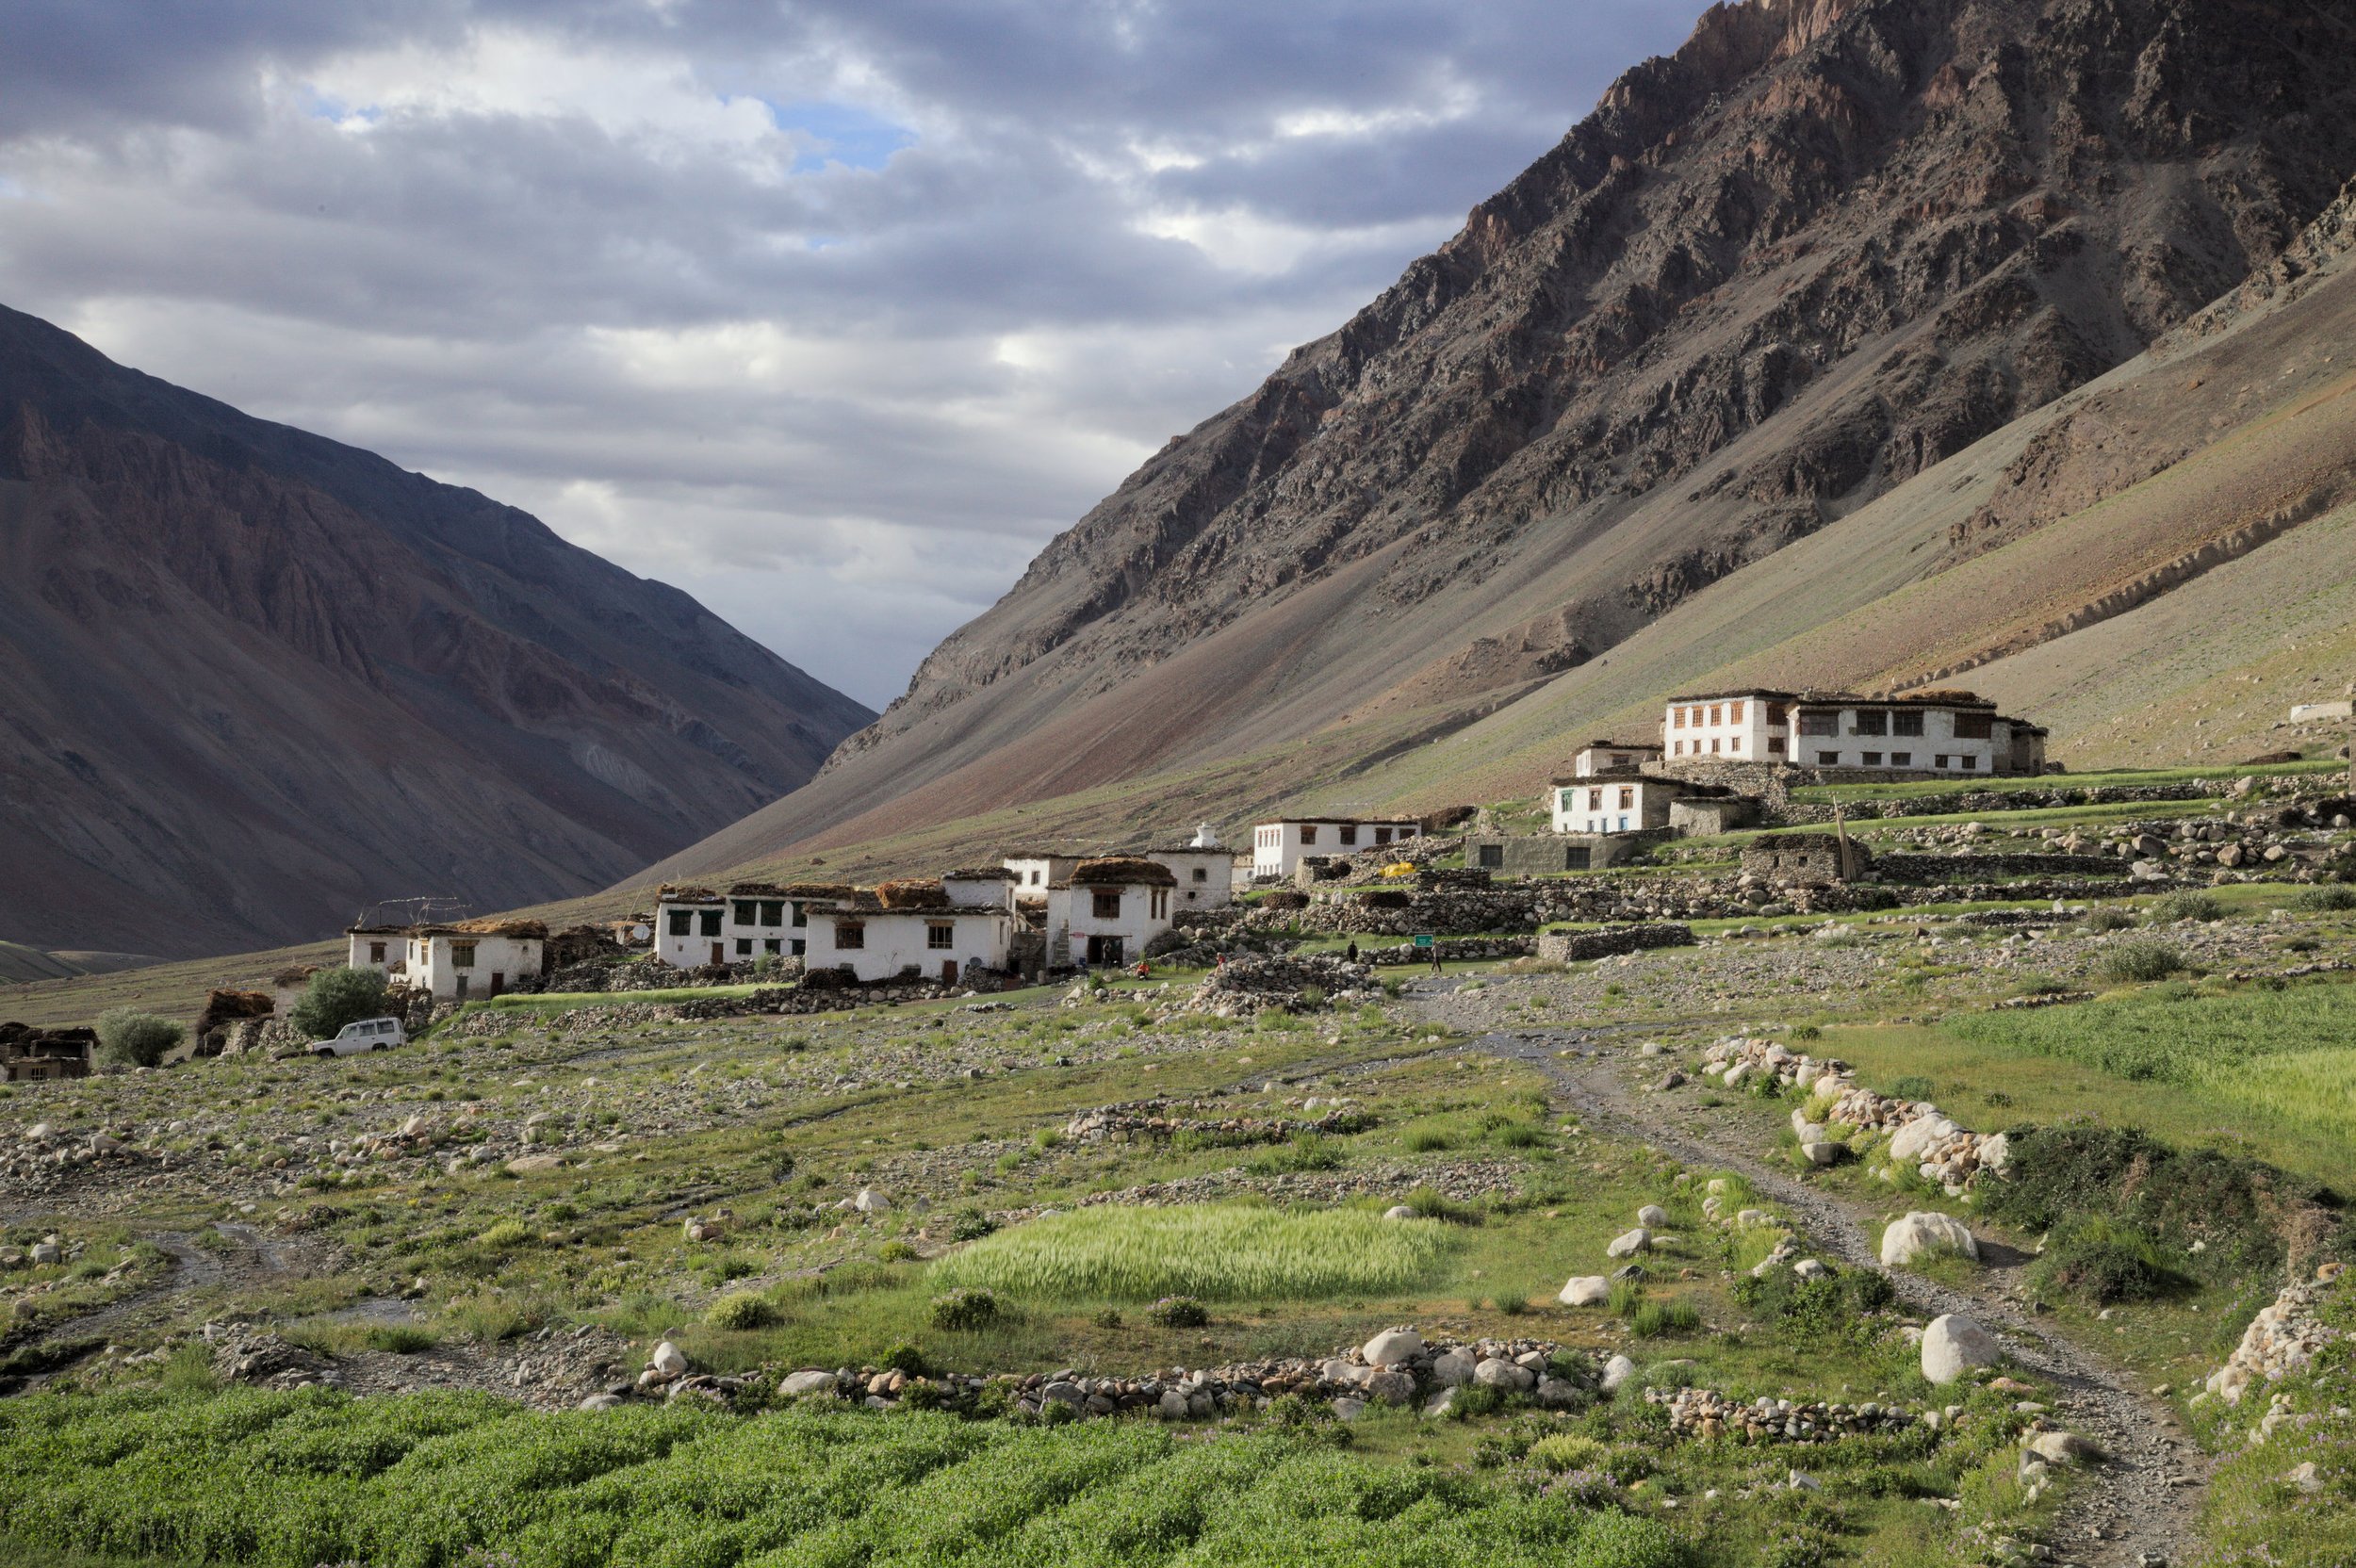  Kargyak, Zanskar for Inside Himalayas 